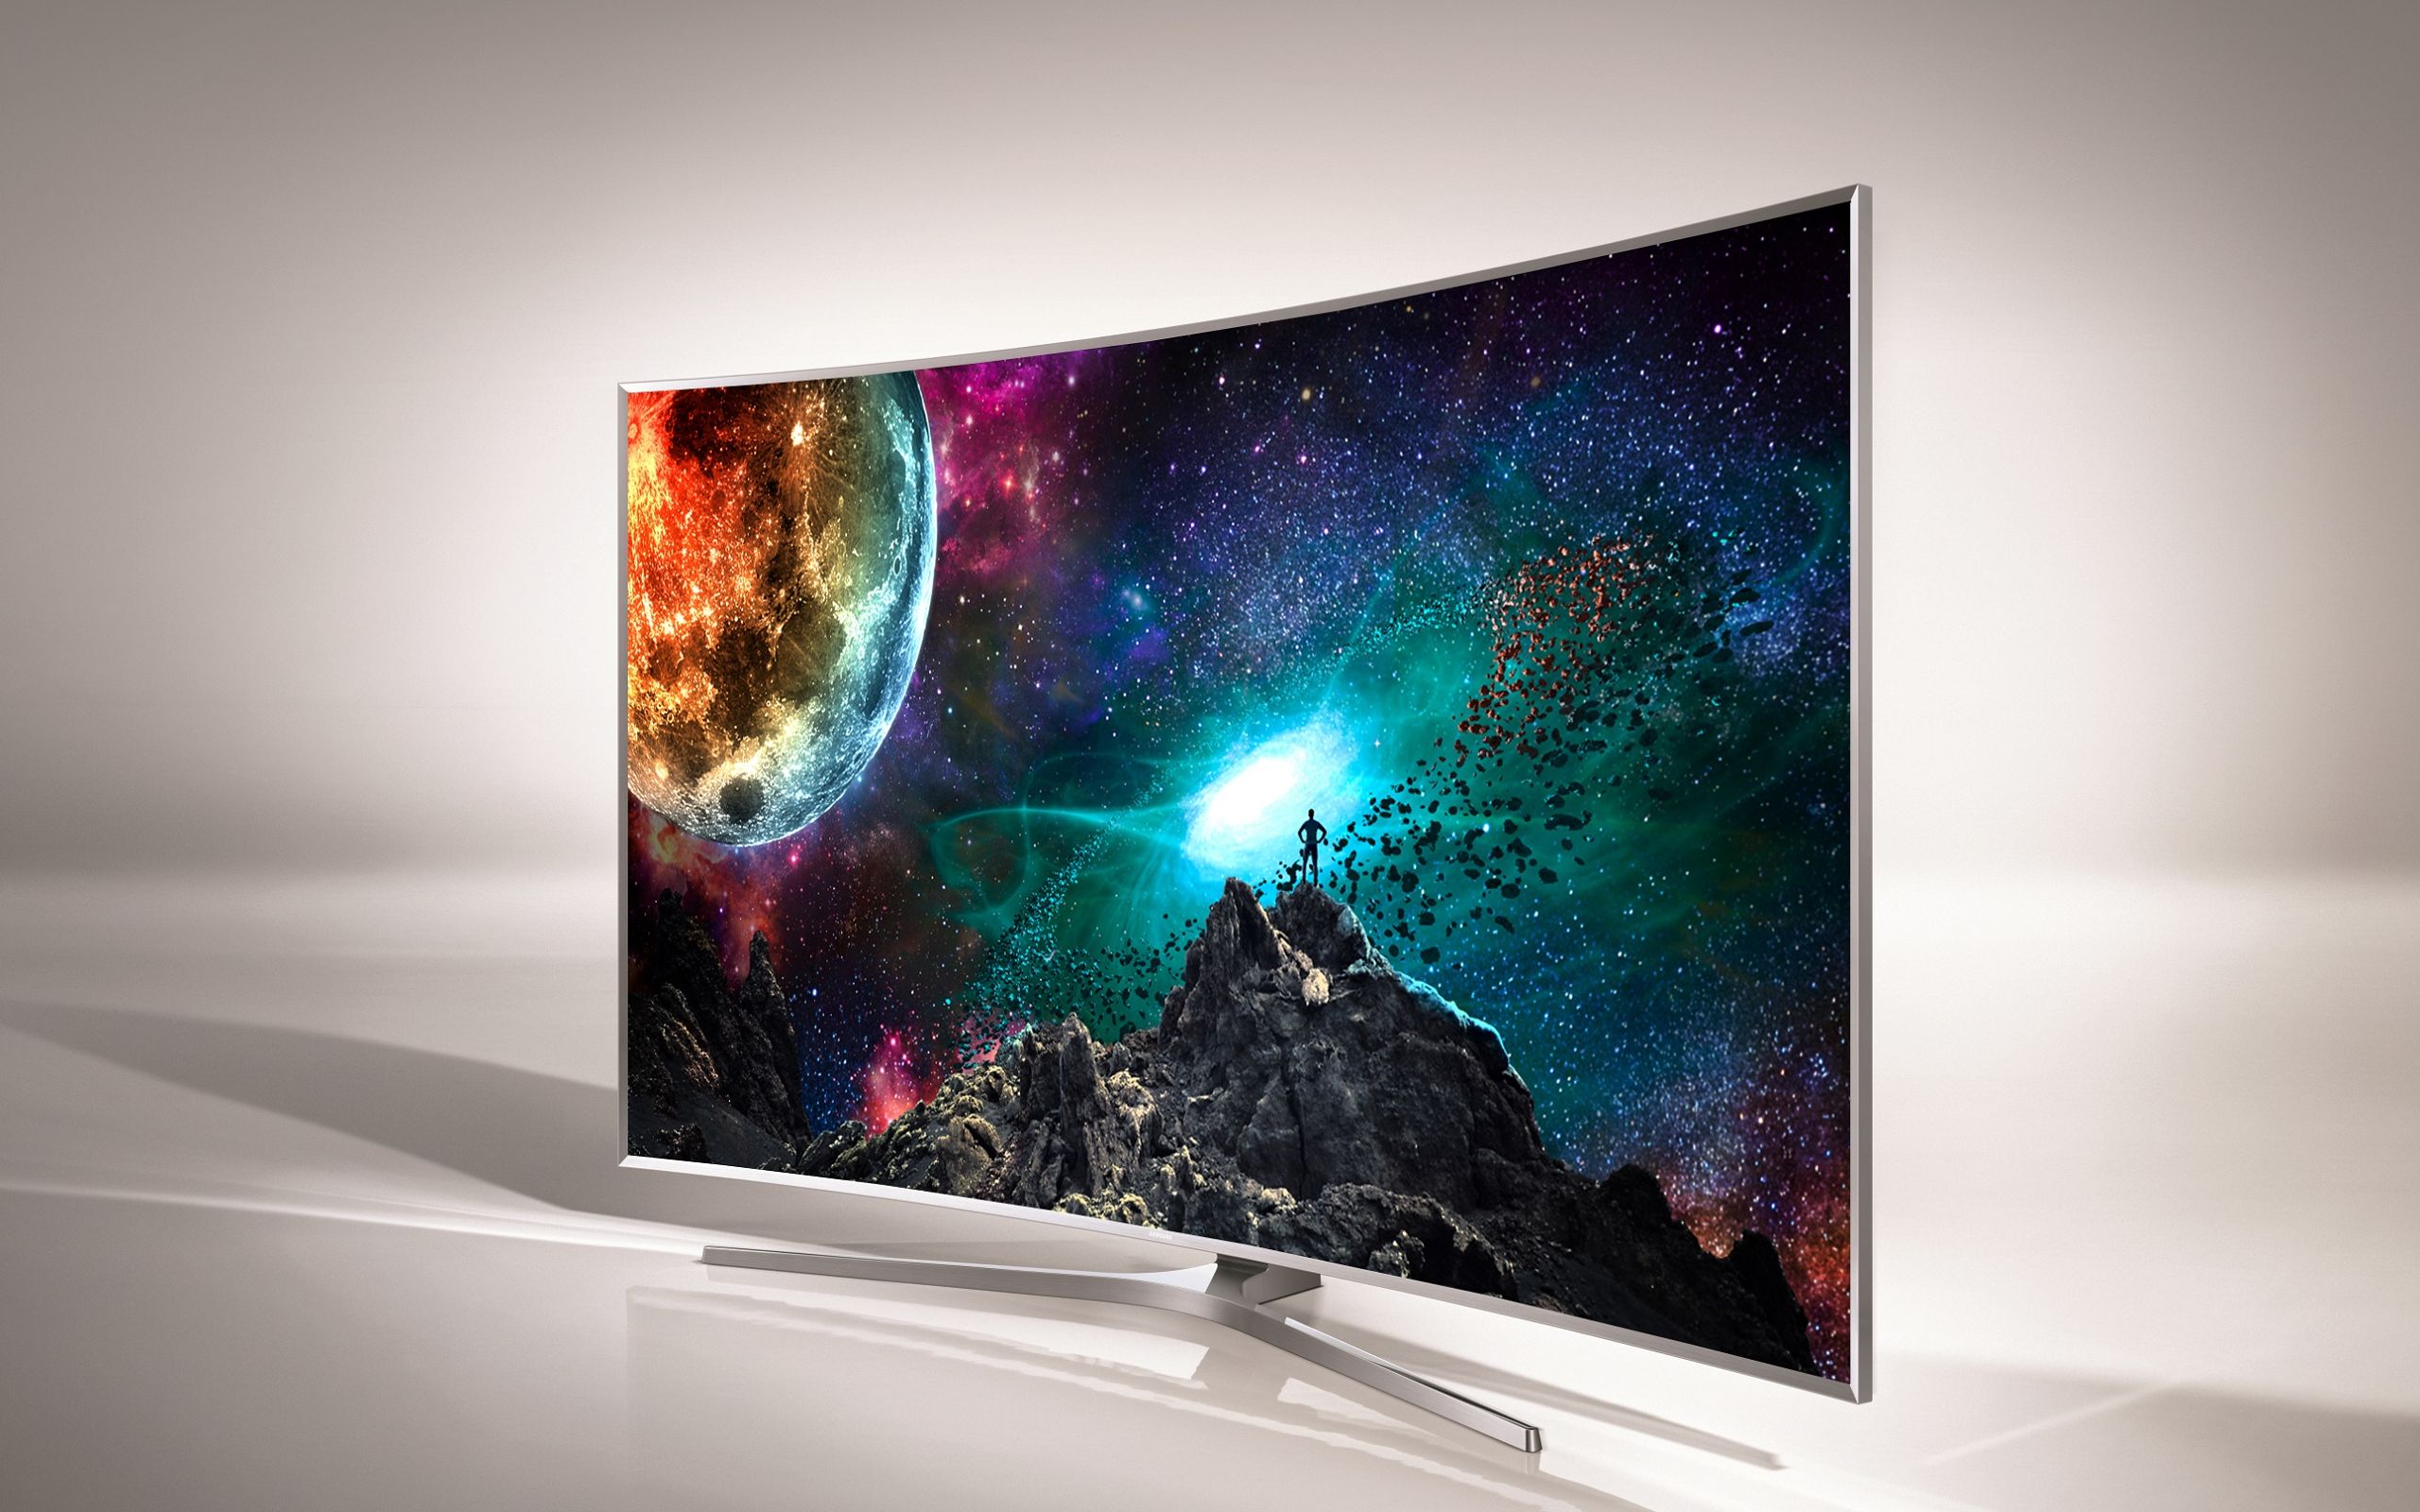 Какая хорошая модель телевизора. Samsung ue88js9500.